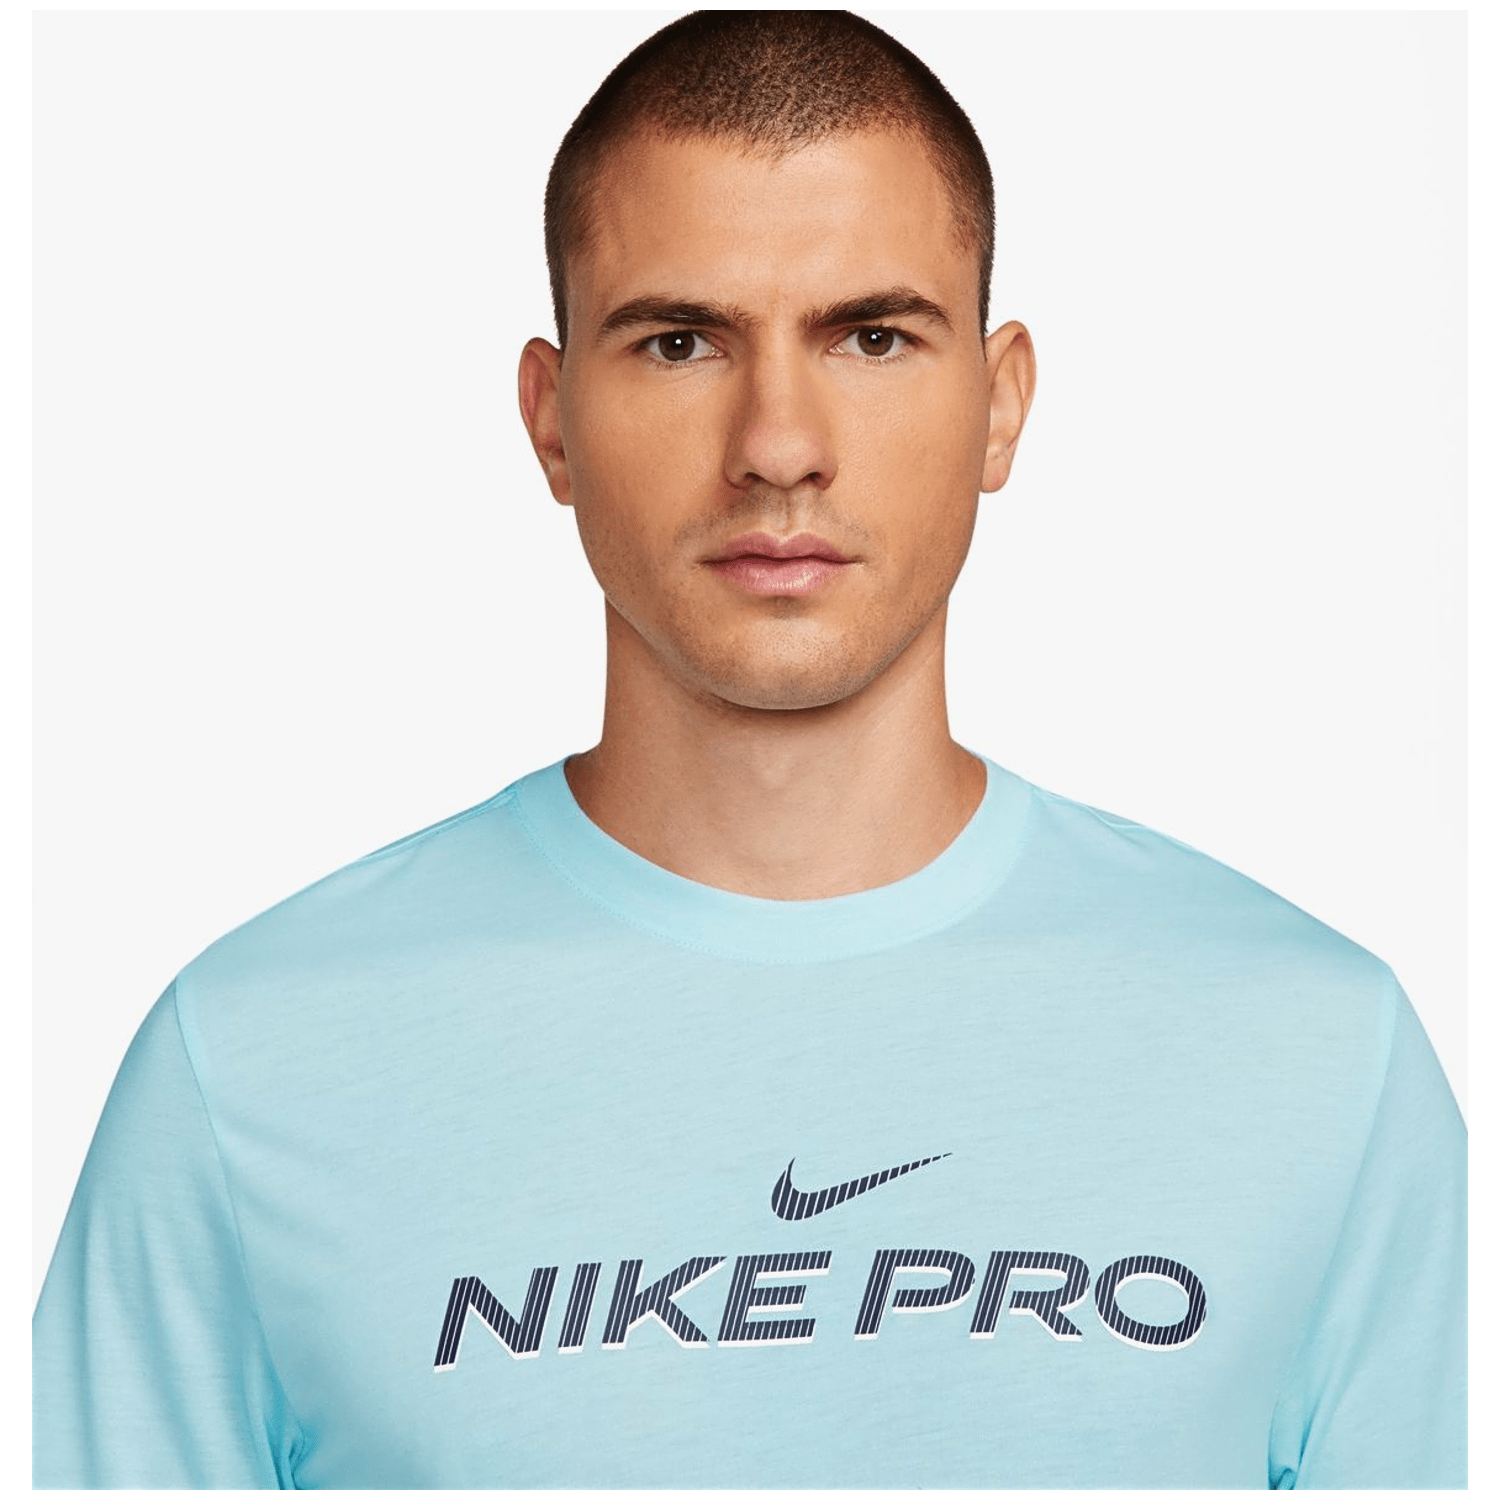 Nike Dri-Fit Fitness Herren T-Shirt